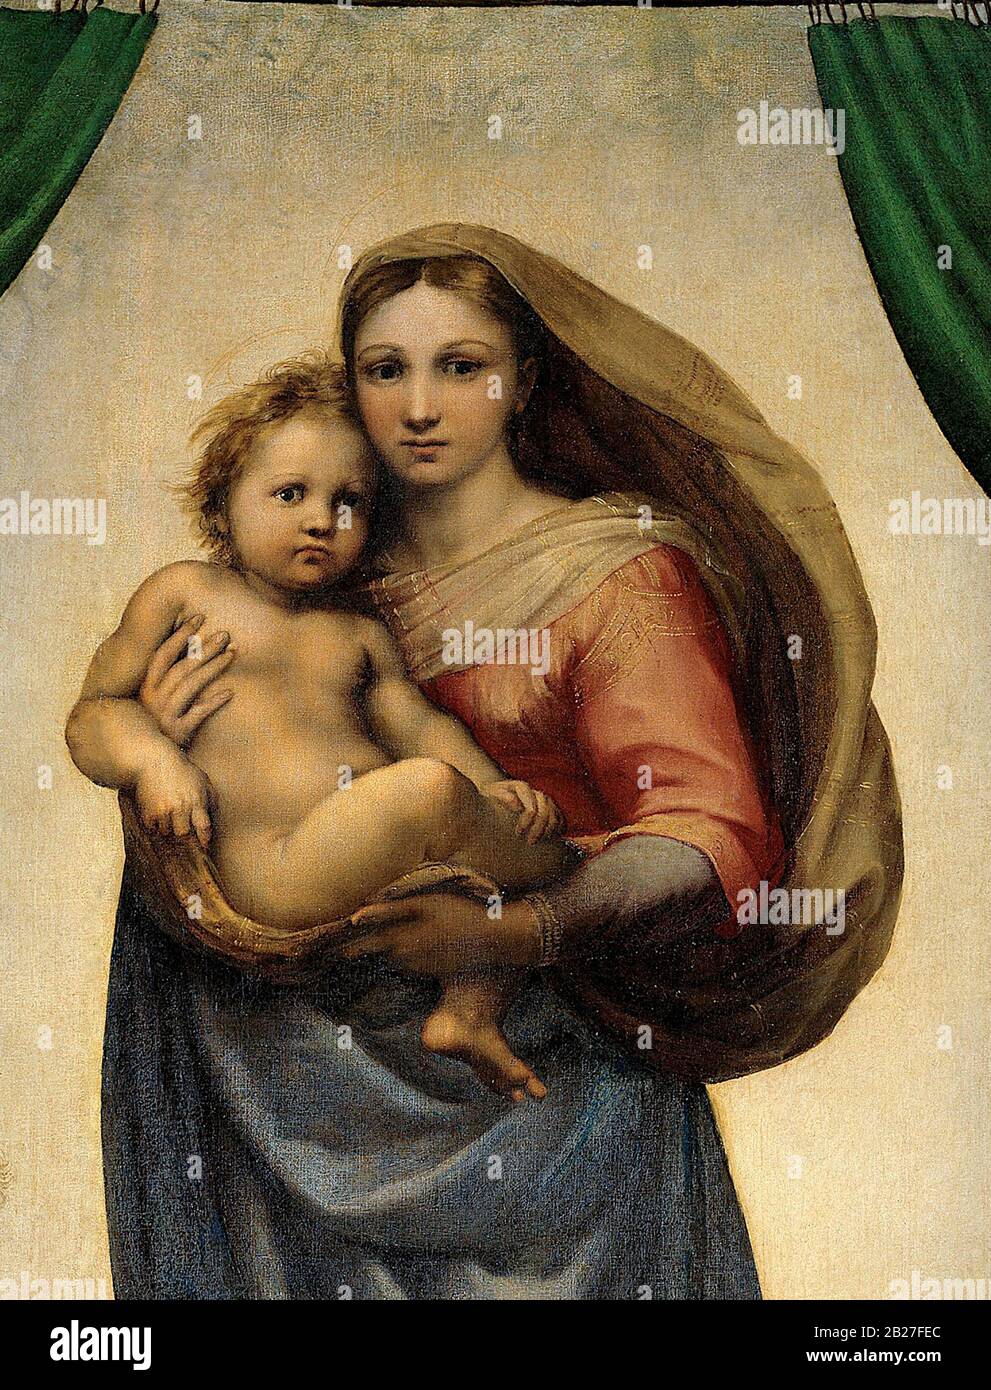 La Madonna Sistine (Madonna di San Sisto) 1512 (détail) peinture de Raphaël (Raffaello Sanzio da Urbino) - Très haute résolution et image de qualité Banque D'Images